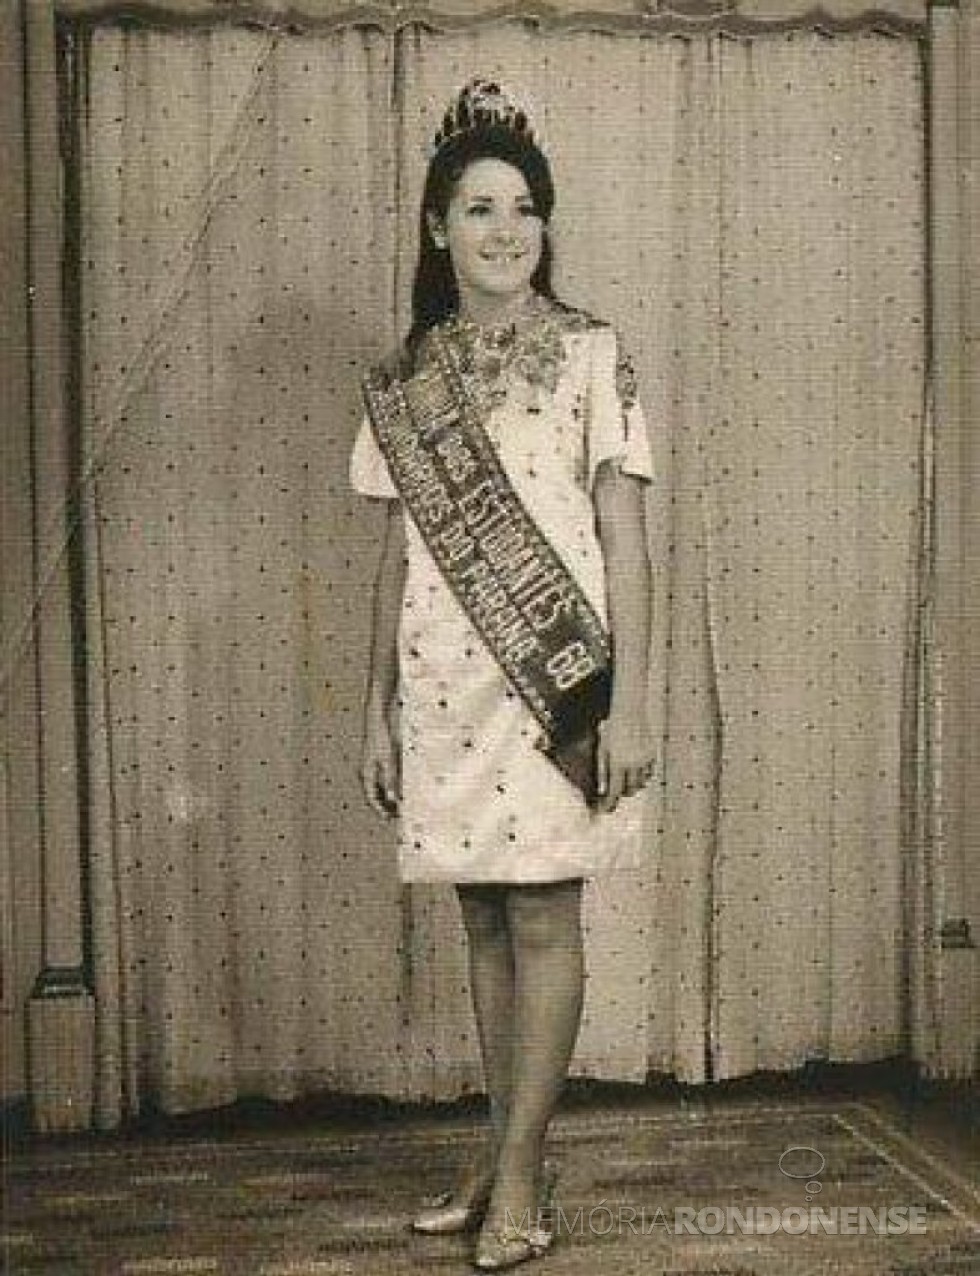 Miriam Lúcia Fernandes Mazzaferro eleita Rainha dos Estudantes Secundaristas do Paraná 1968, em janeiro de 1968.
Imagem: Acervo pessoal - FOTO 2 - 